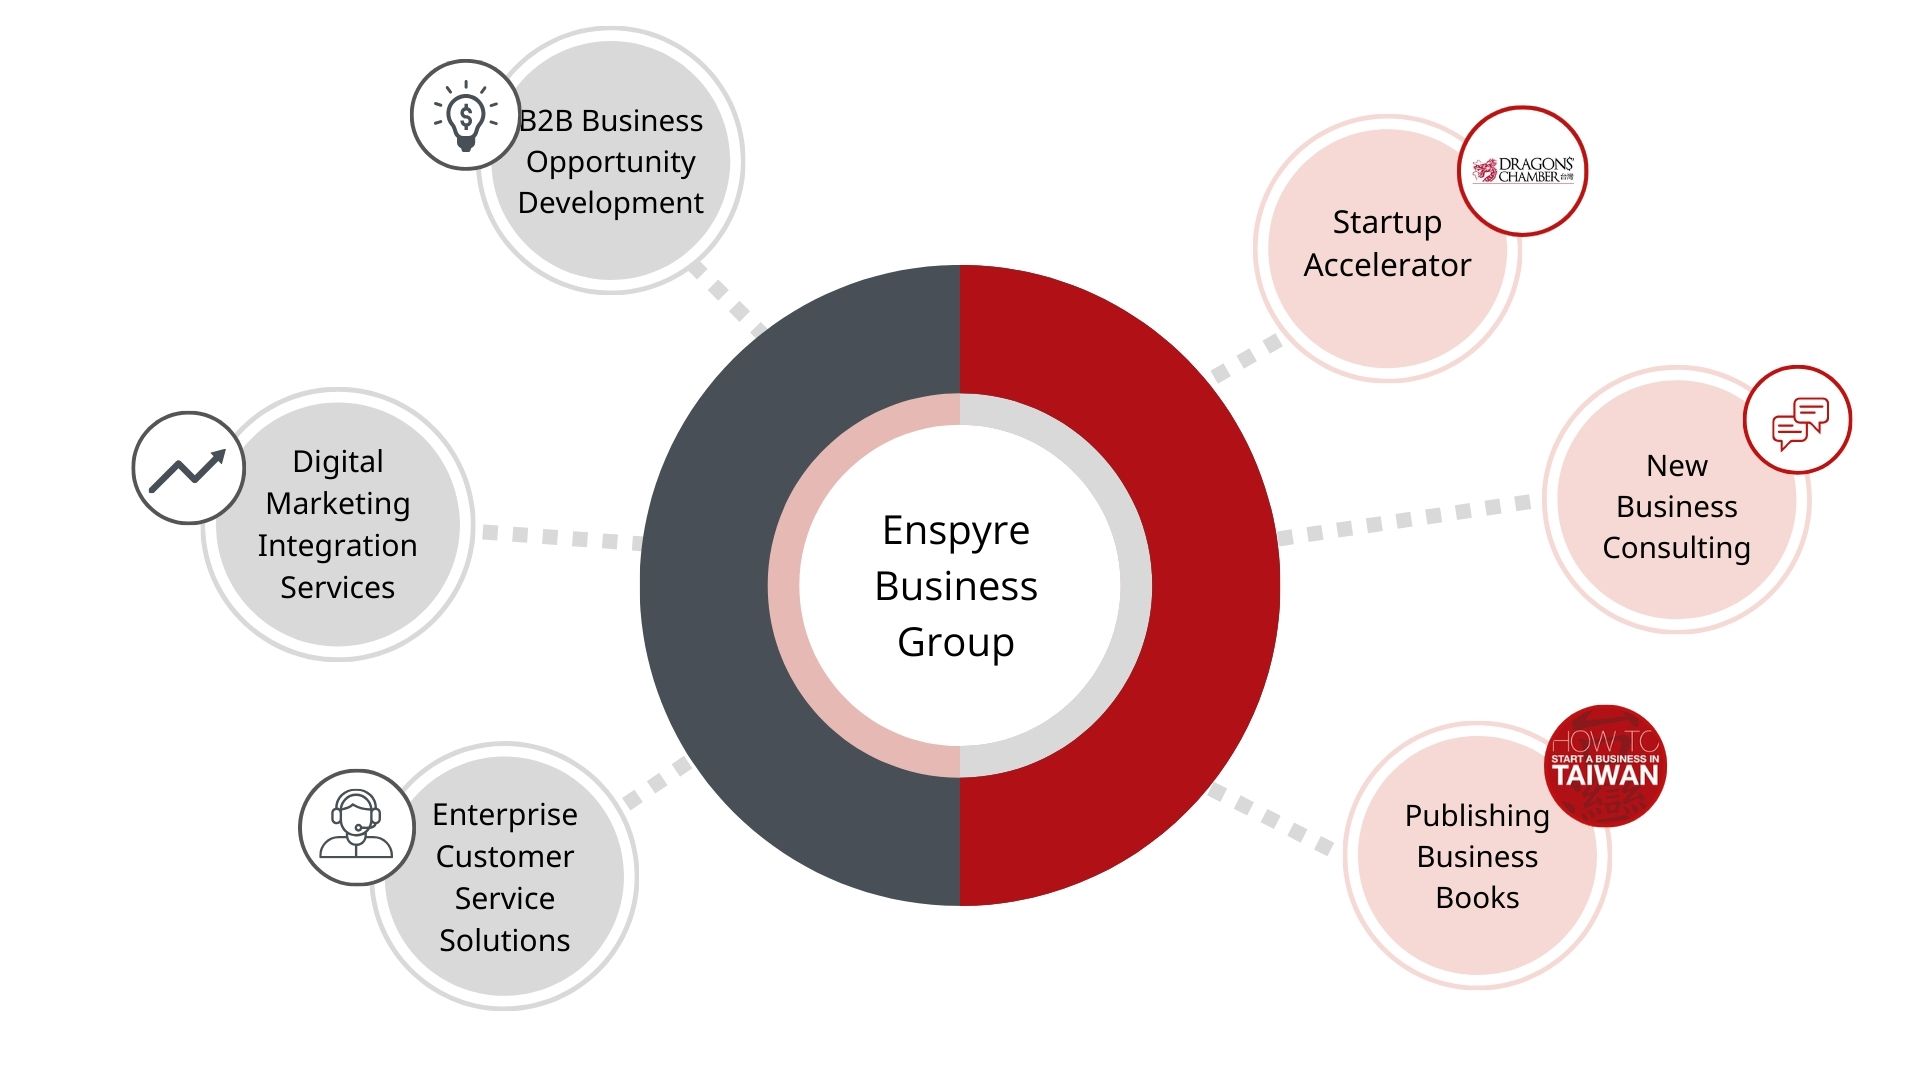 Enspyre Business Group